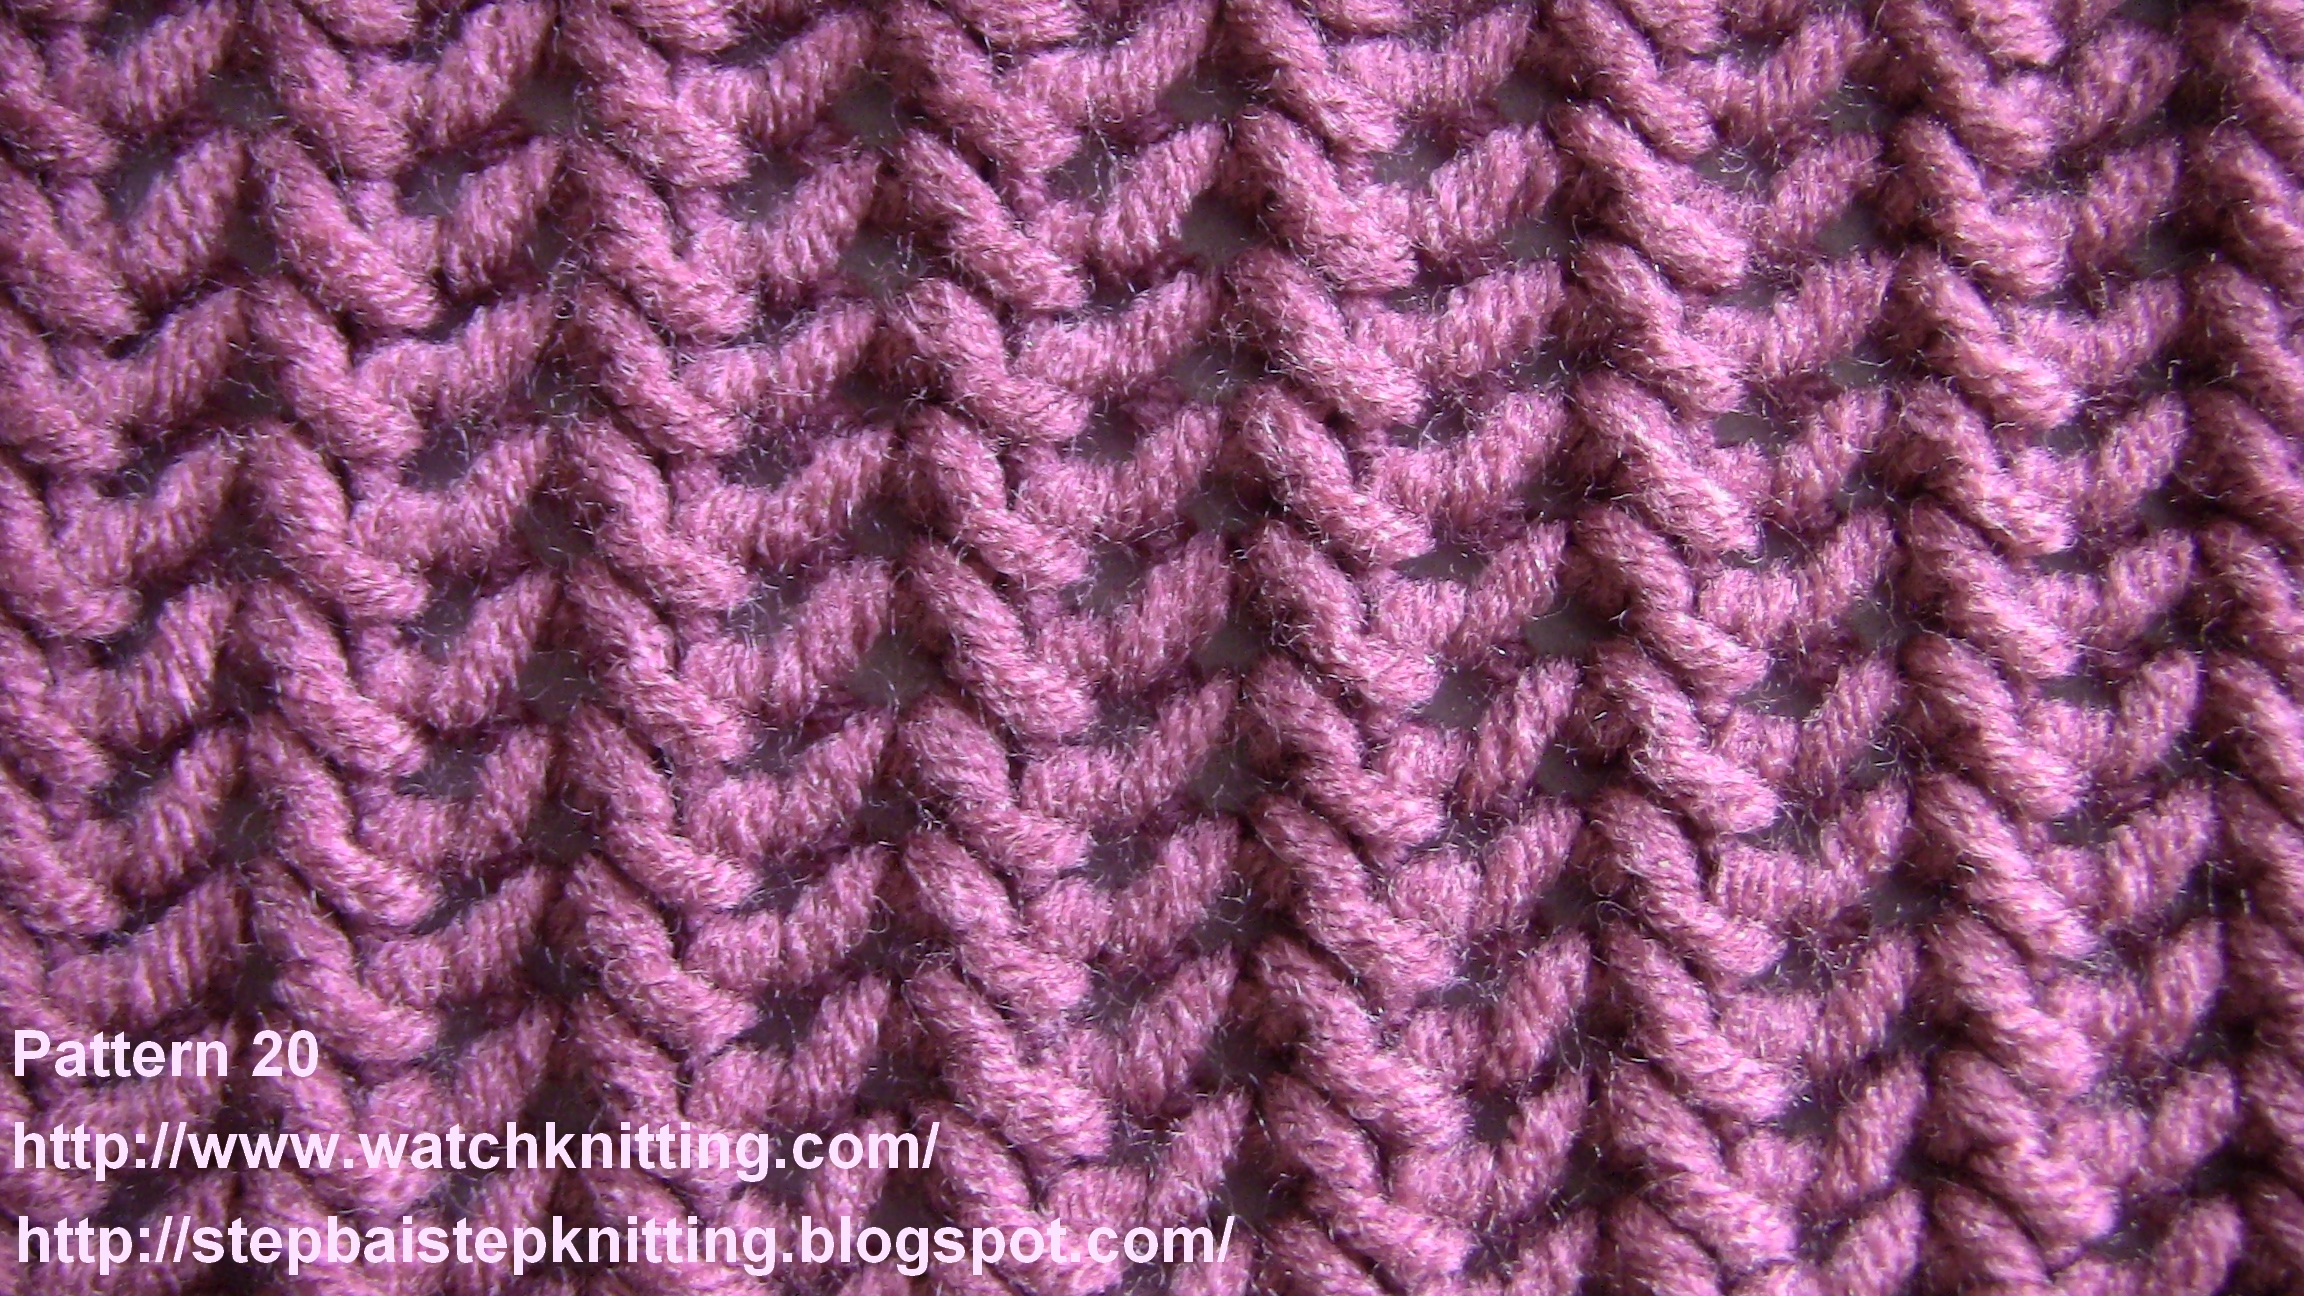 Knitting machine - Wikipedia, the free encyclopedia